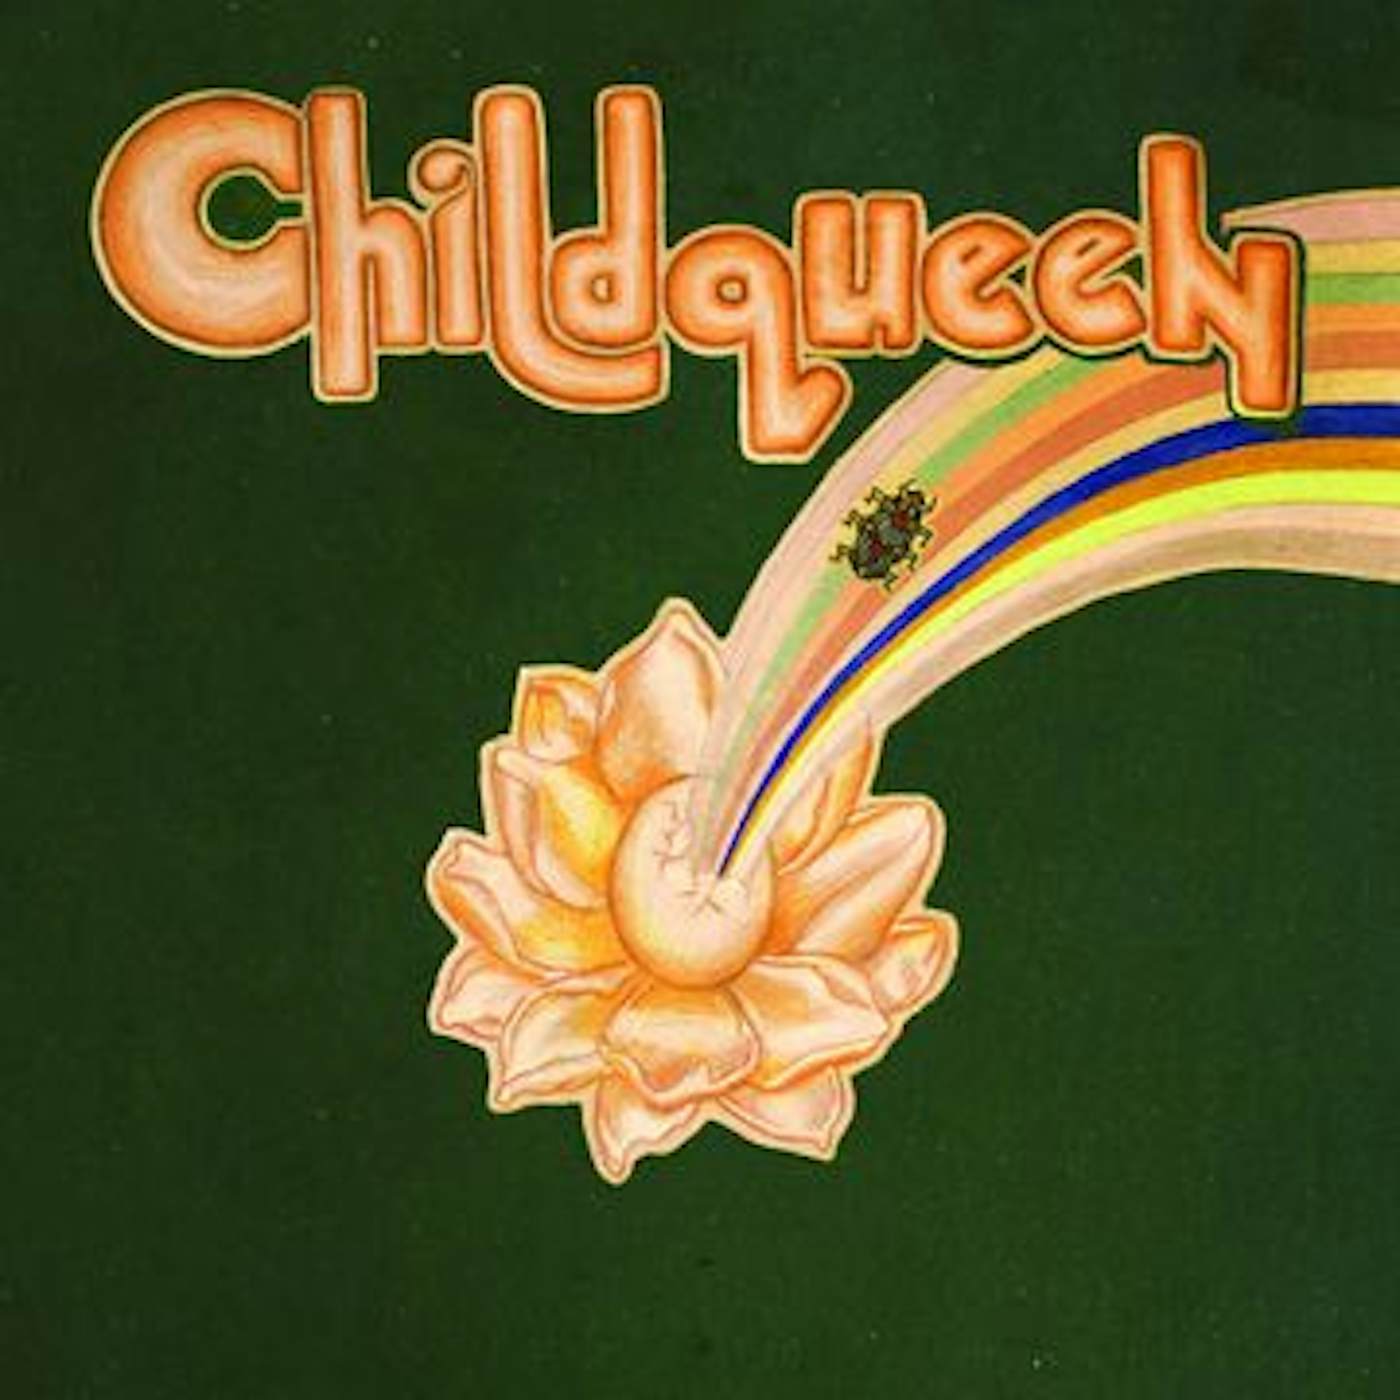 Kadhja Bonet Childqueen CD